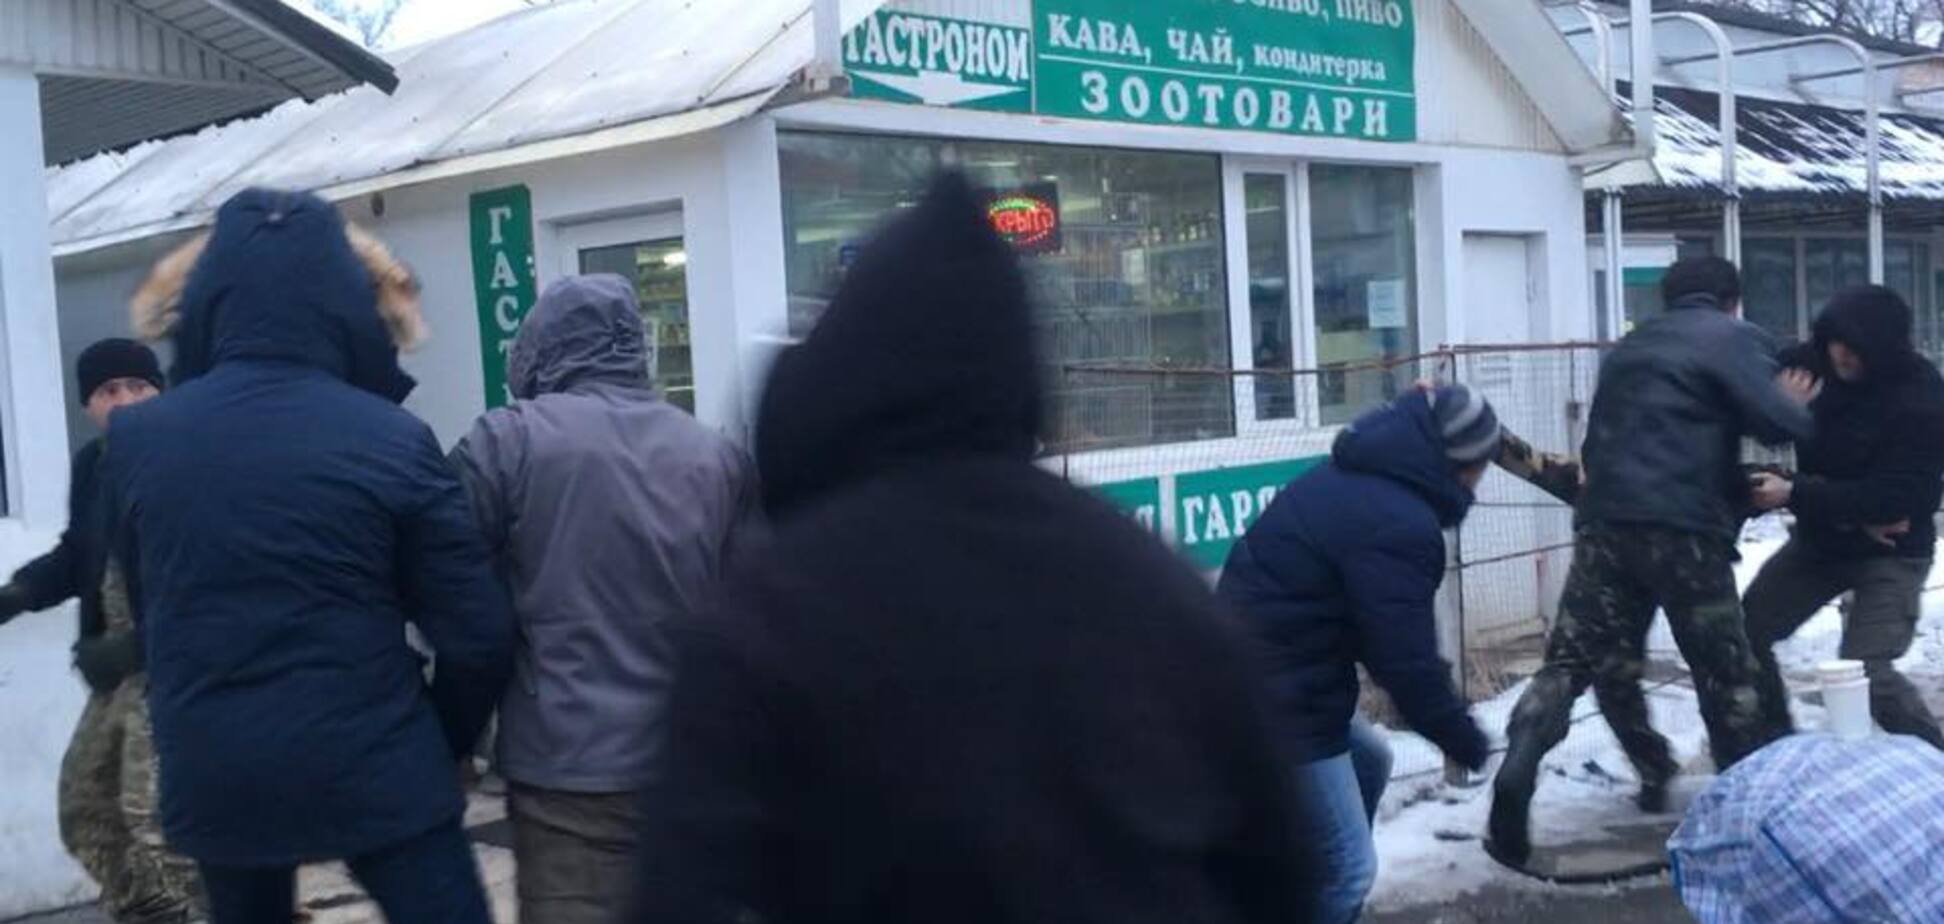 'Ветеран - не убогий': у Києві покарали банду в камуфляжі